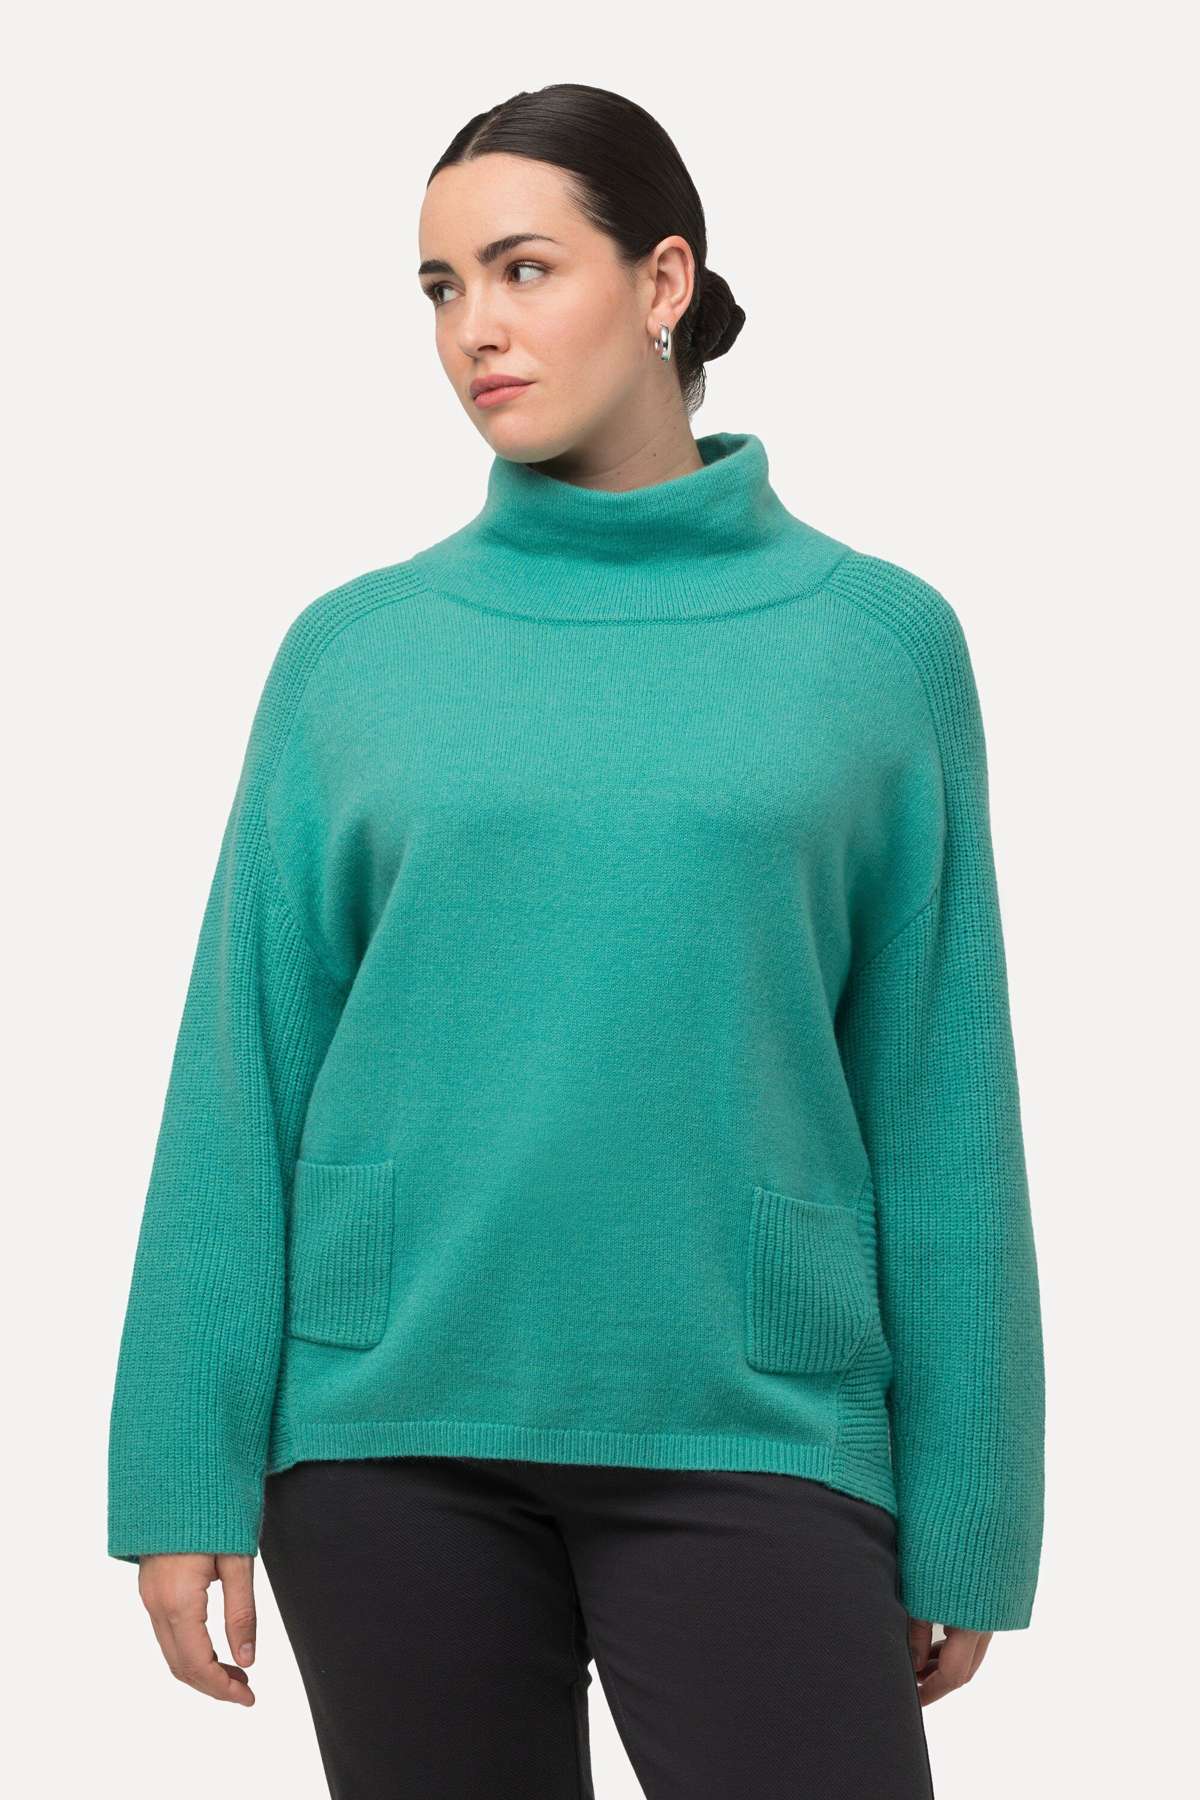 Вязаный пуловер пуловер ребристая вязка вставки воротник стойка длинные рукава